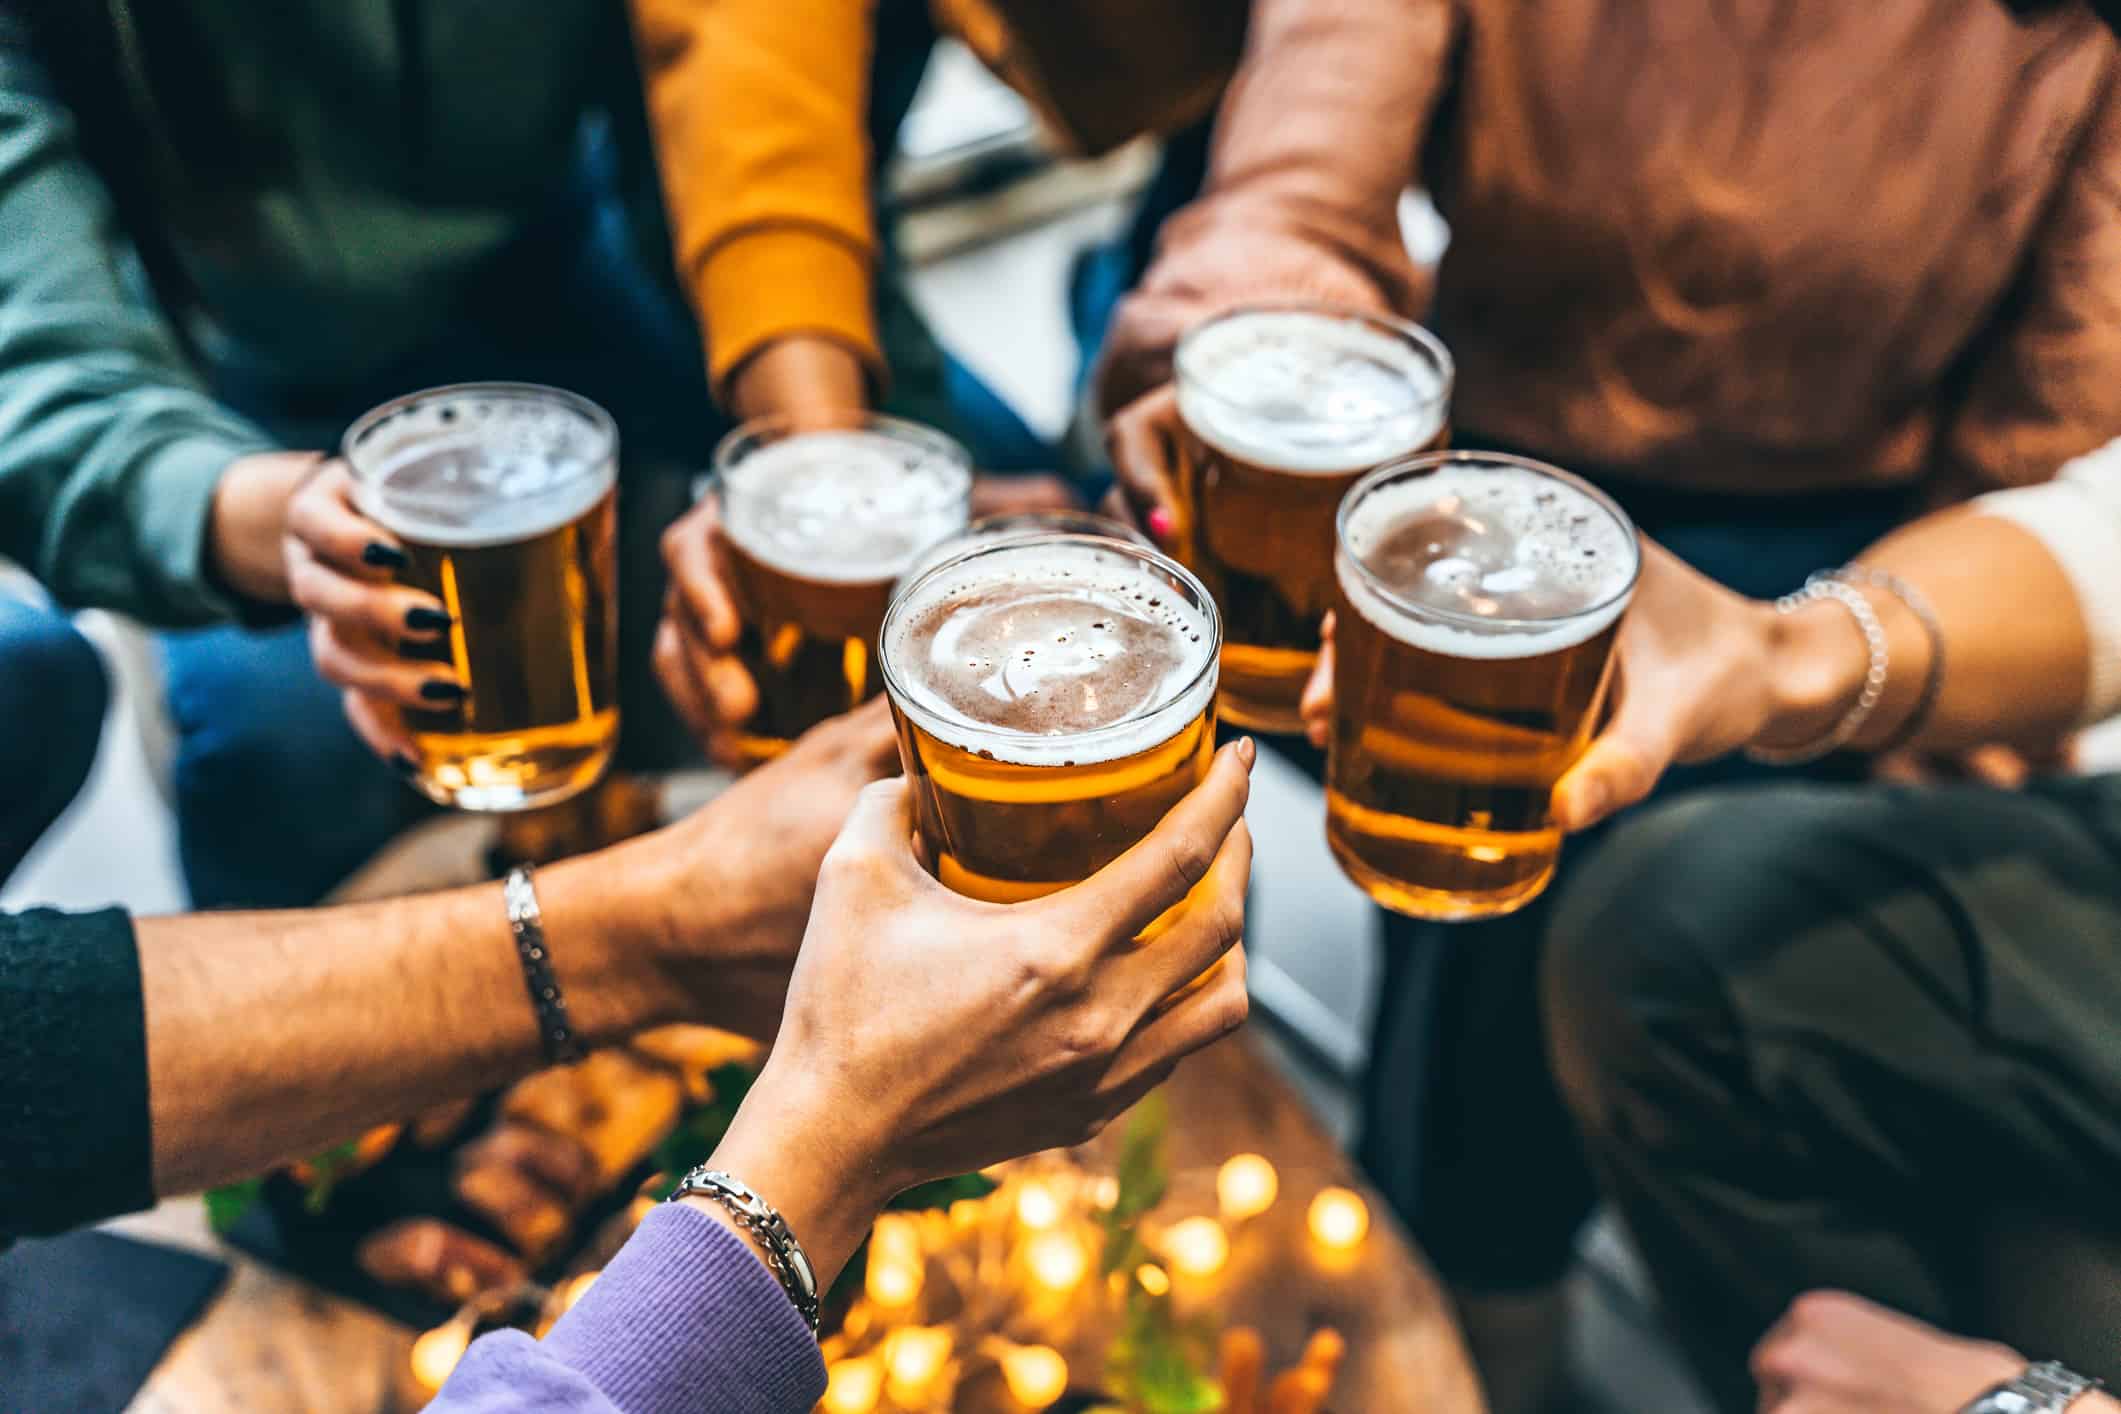 Gruppo di amici che bevono e brindano con un bicchiere di birra al ristorante pub birreria - Persone multirazziali felici che si godono l'happy hour con una pinta seduti al tavolo del bar - Concetto di stile di vita di cibi e bevande per giovani